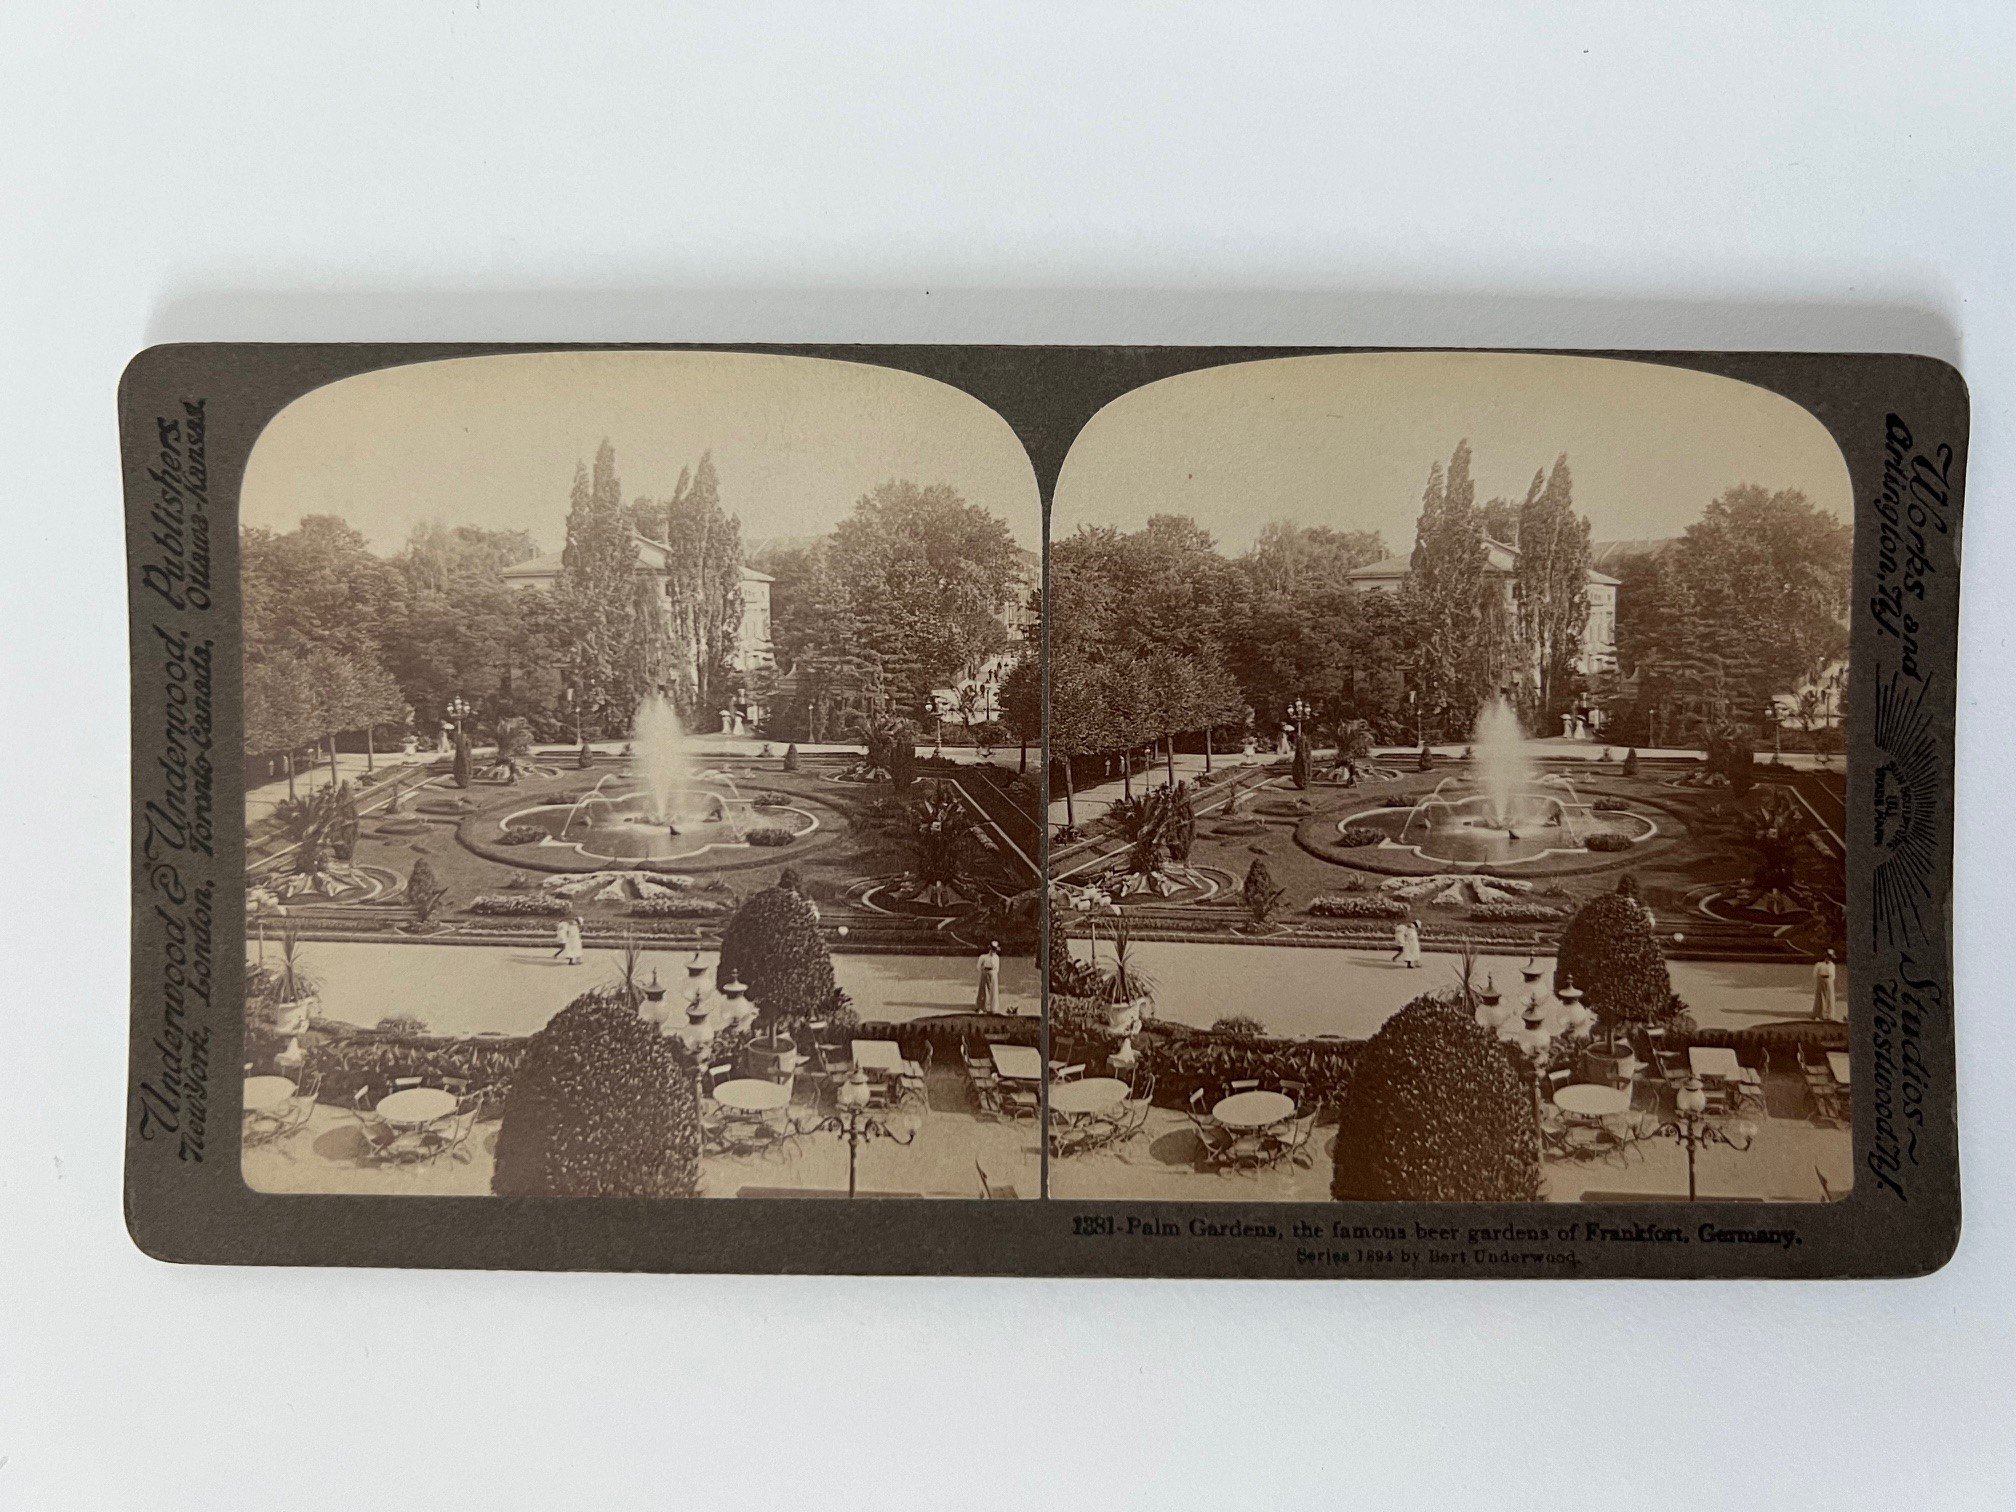 Stereobild, Underwood & Underwood, Nr. 1881, Palmengarten, the famous beer gardens of Frankfort, ca. 1910. (Taunus-Rhein-Main - Regionalgeschichtliche Sammlung Dr. Stefan Naas CC BY-NC-SA)